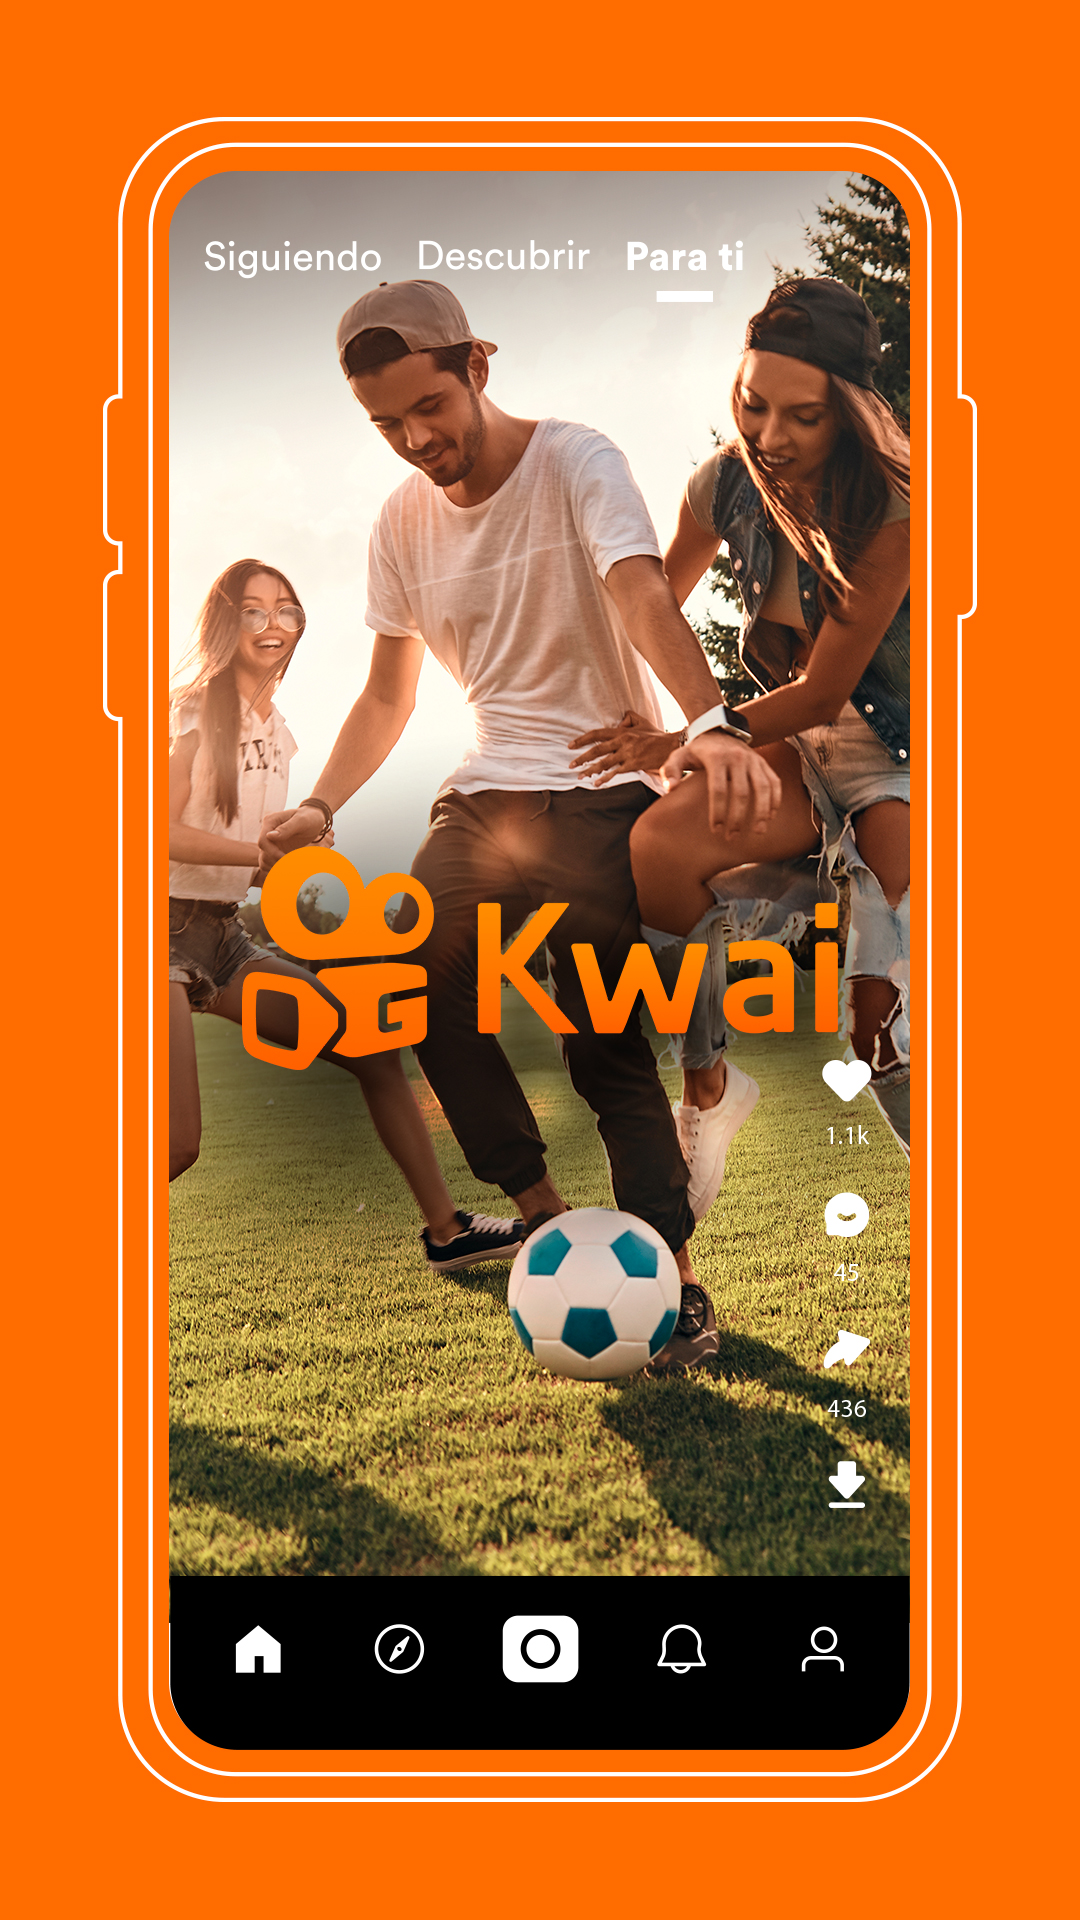 Kwai, la app que quiere competir con TikTok, apuesta a la monetización de contenidos ligados al deporte, con foco en el fútbol, en América Latina